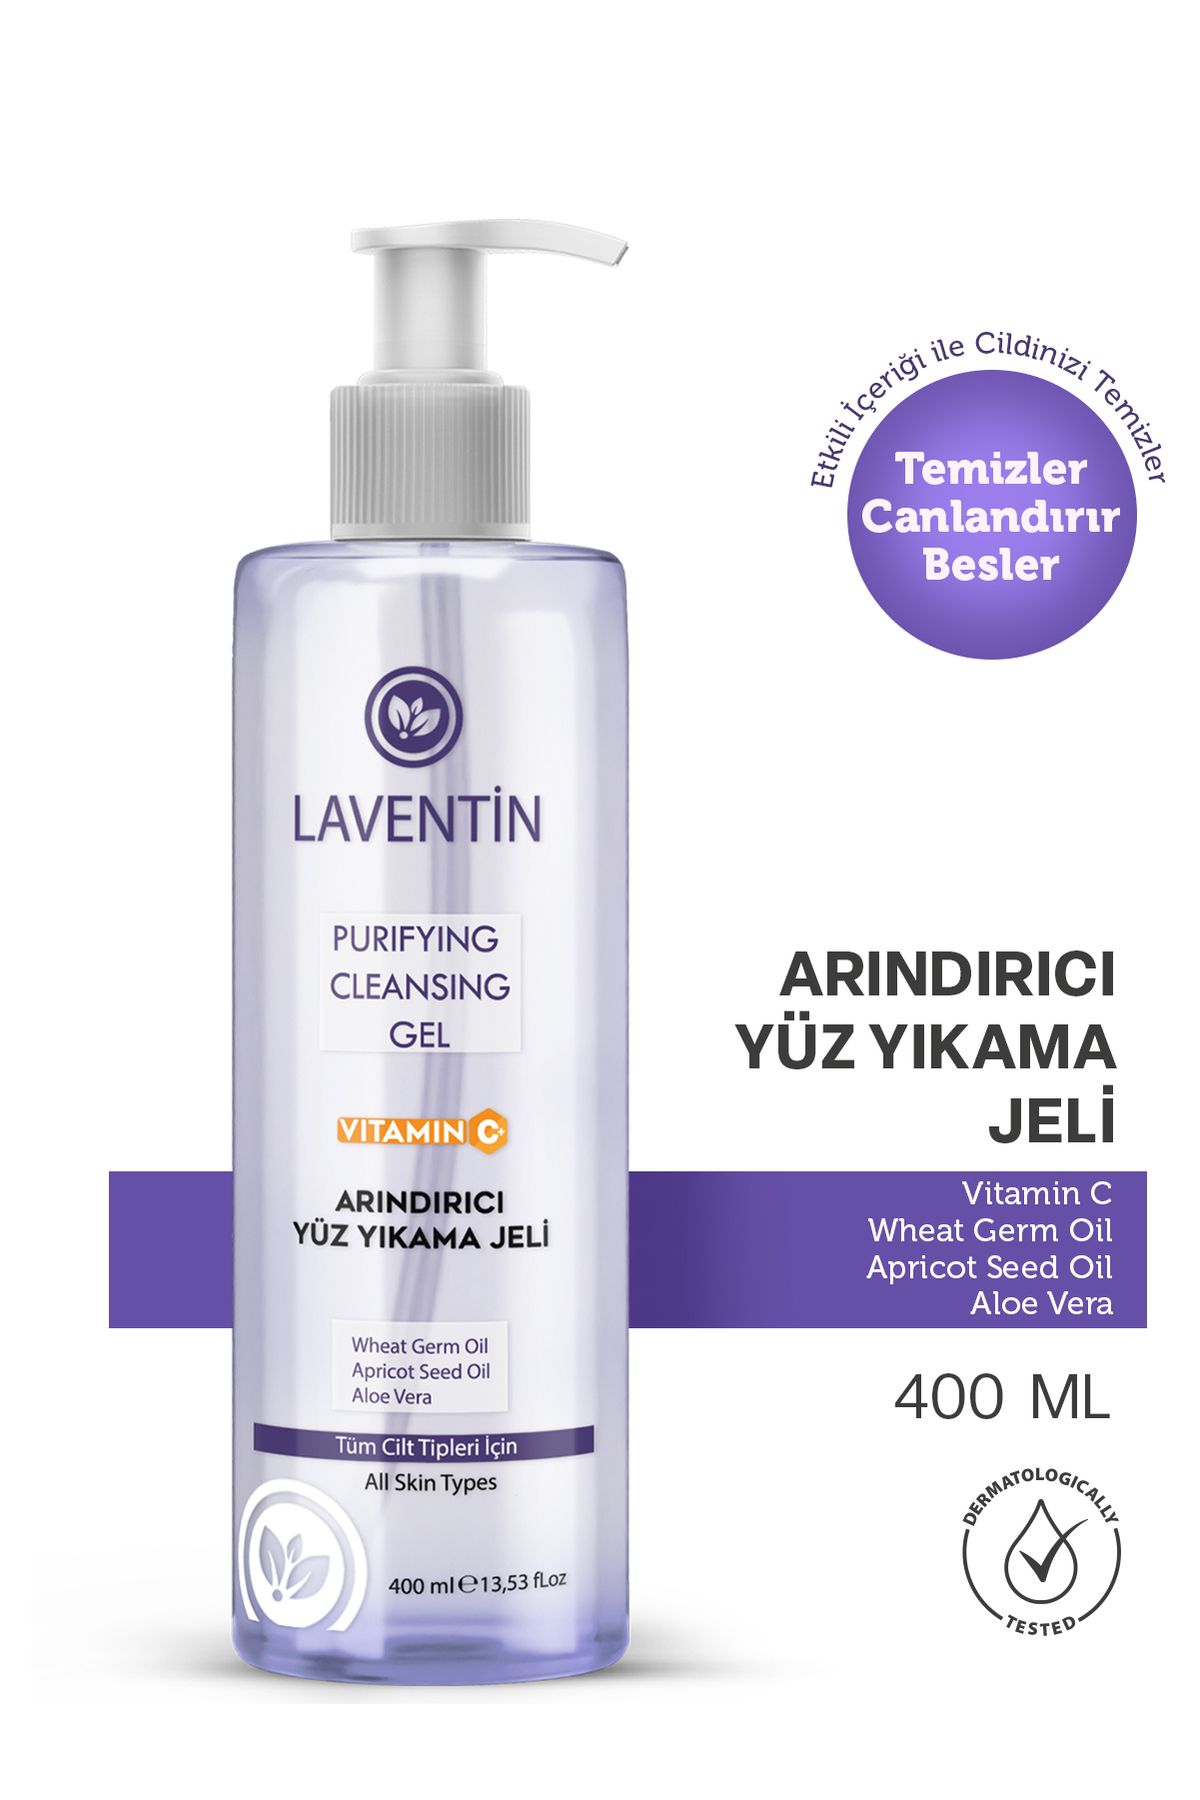 Laventin Akne Ve Siyah Nokta Karşıtı, Arındırıcı Ve Tazeleyici C Vitaminli Yüz Temizleme Jeli 400 Ml